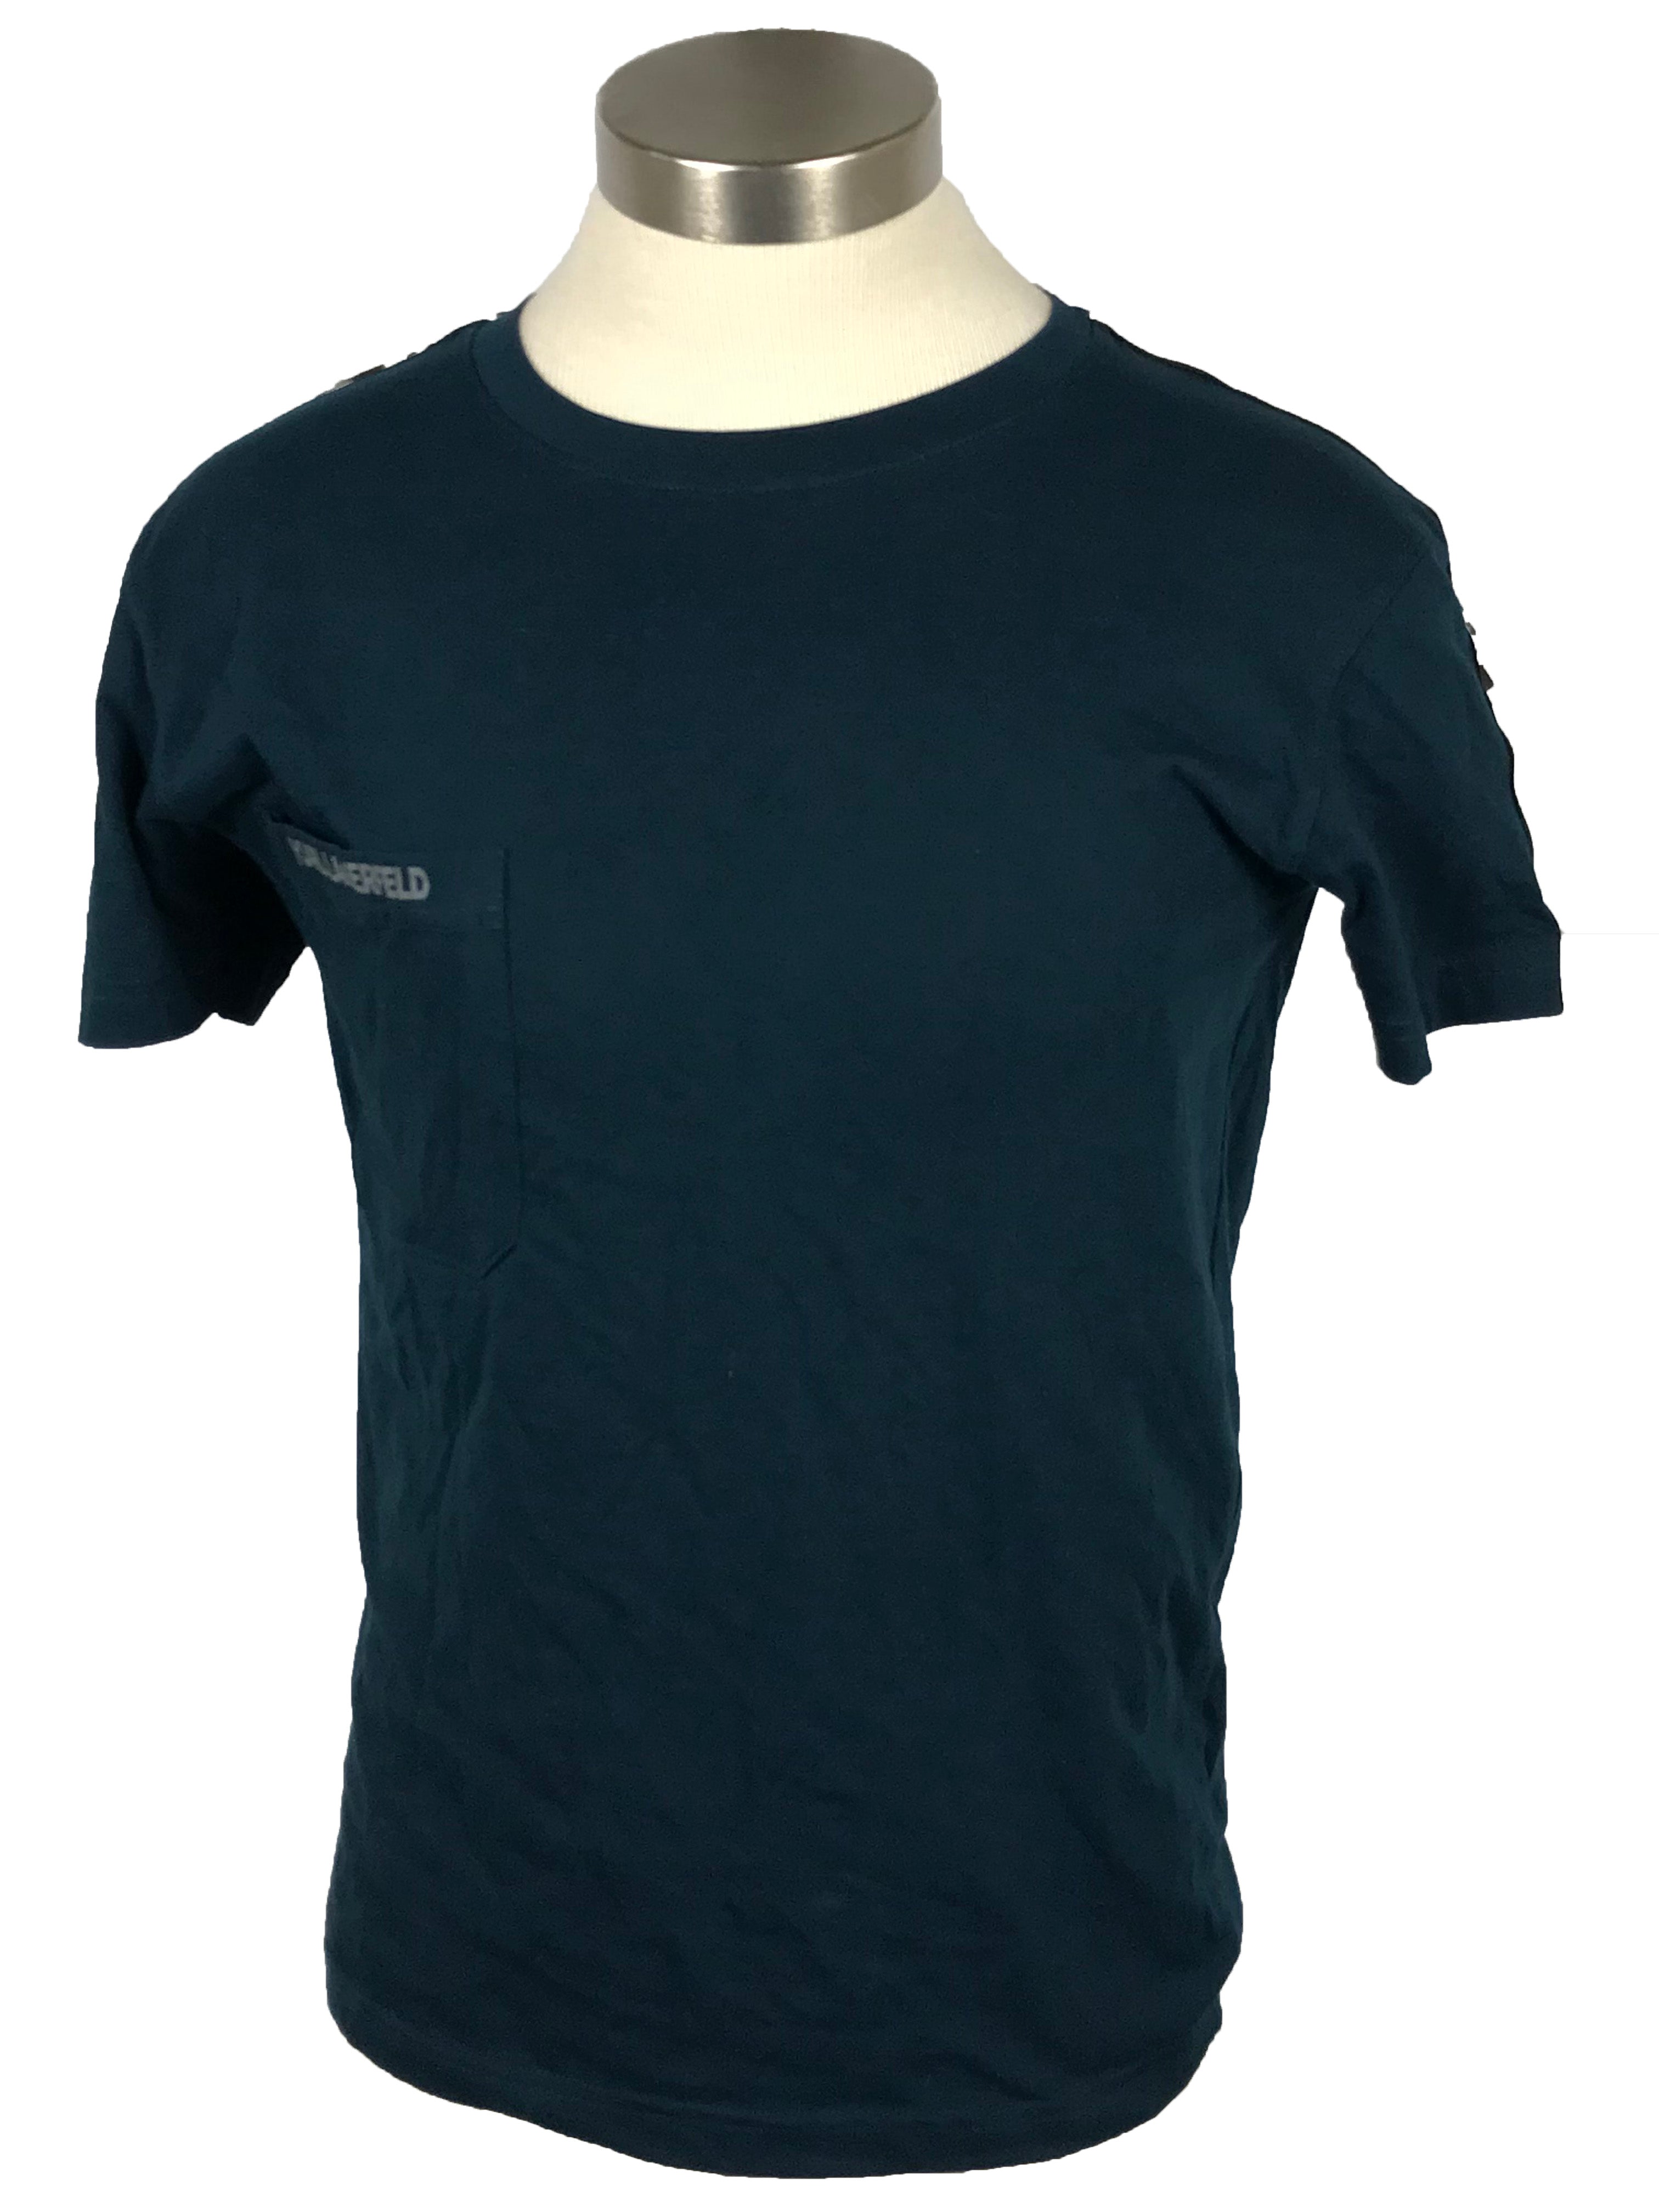 Karl Lagerfeld Turquoise Short Sleeve T-Shirt Men's Size S